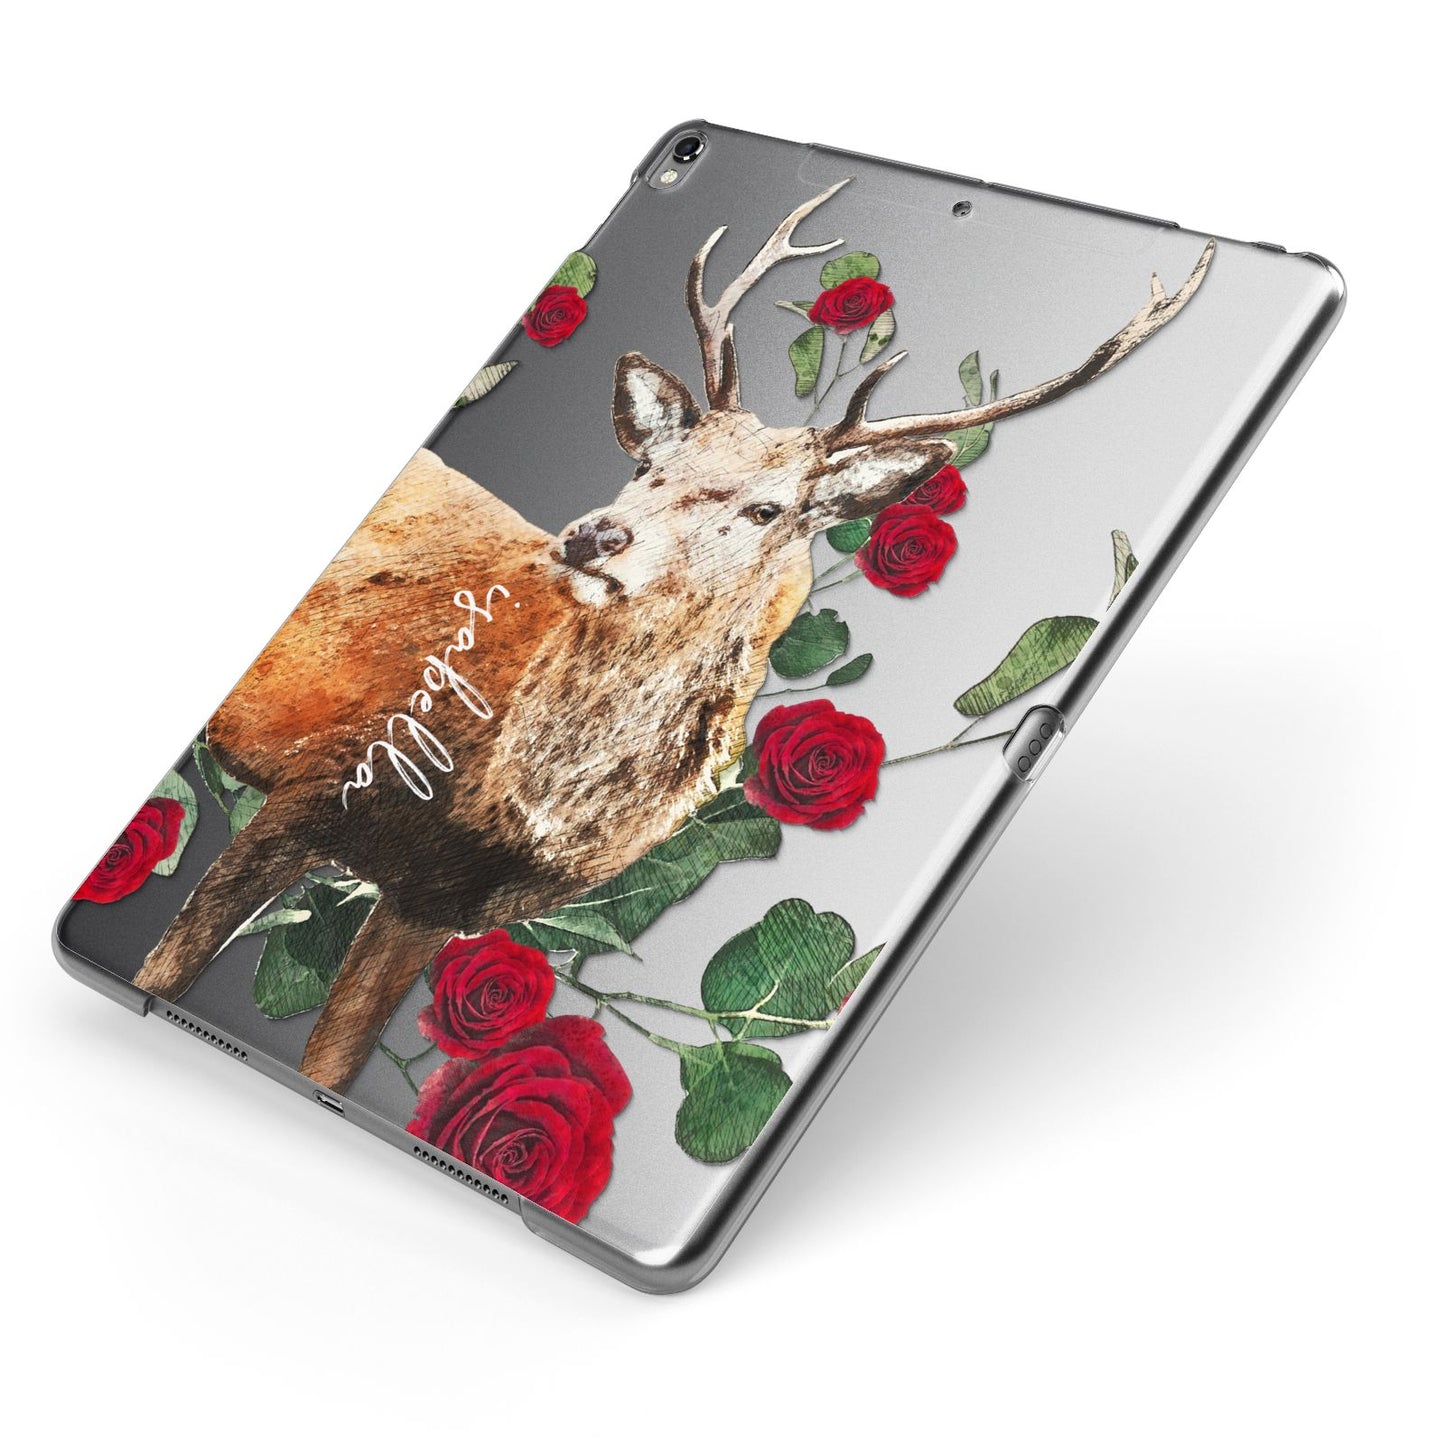 Personalised Deer Name Apple iPad Case on Grey iPad Side View